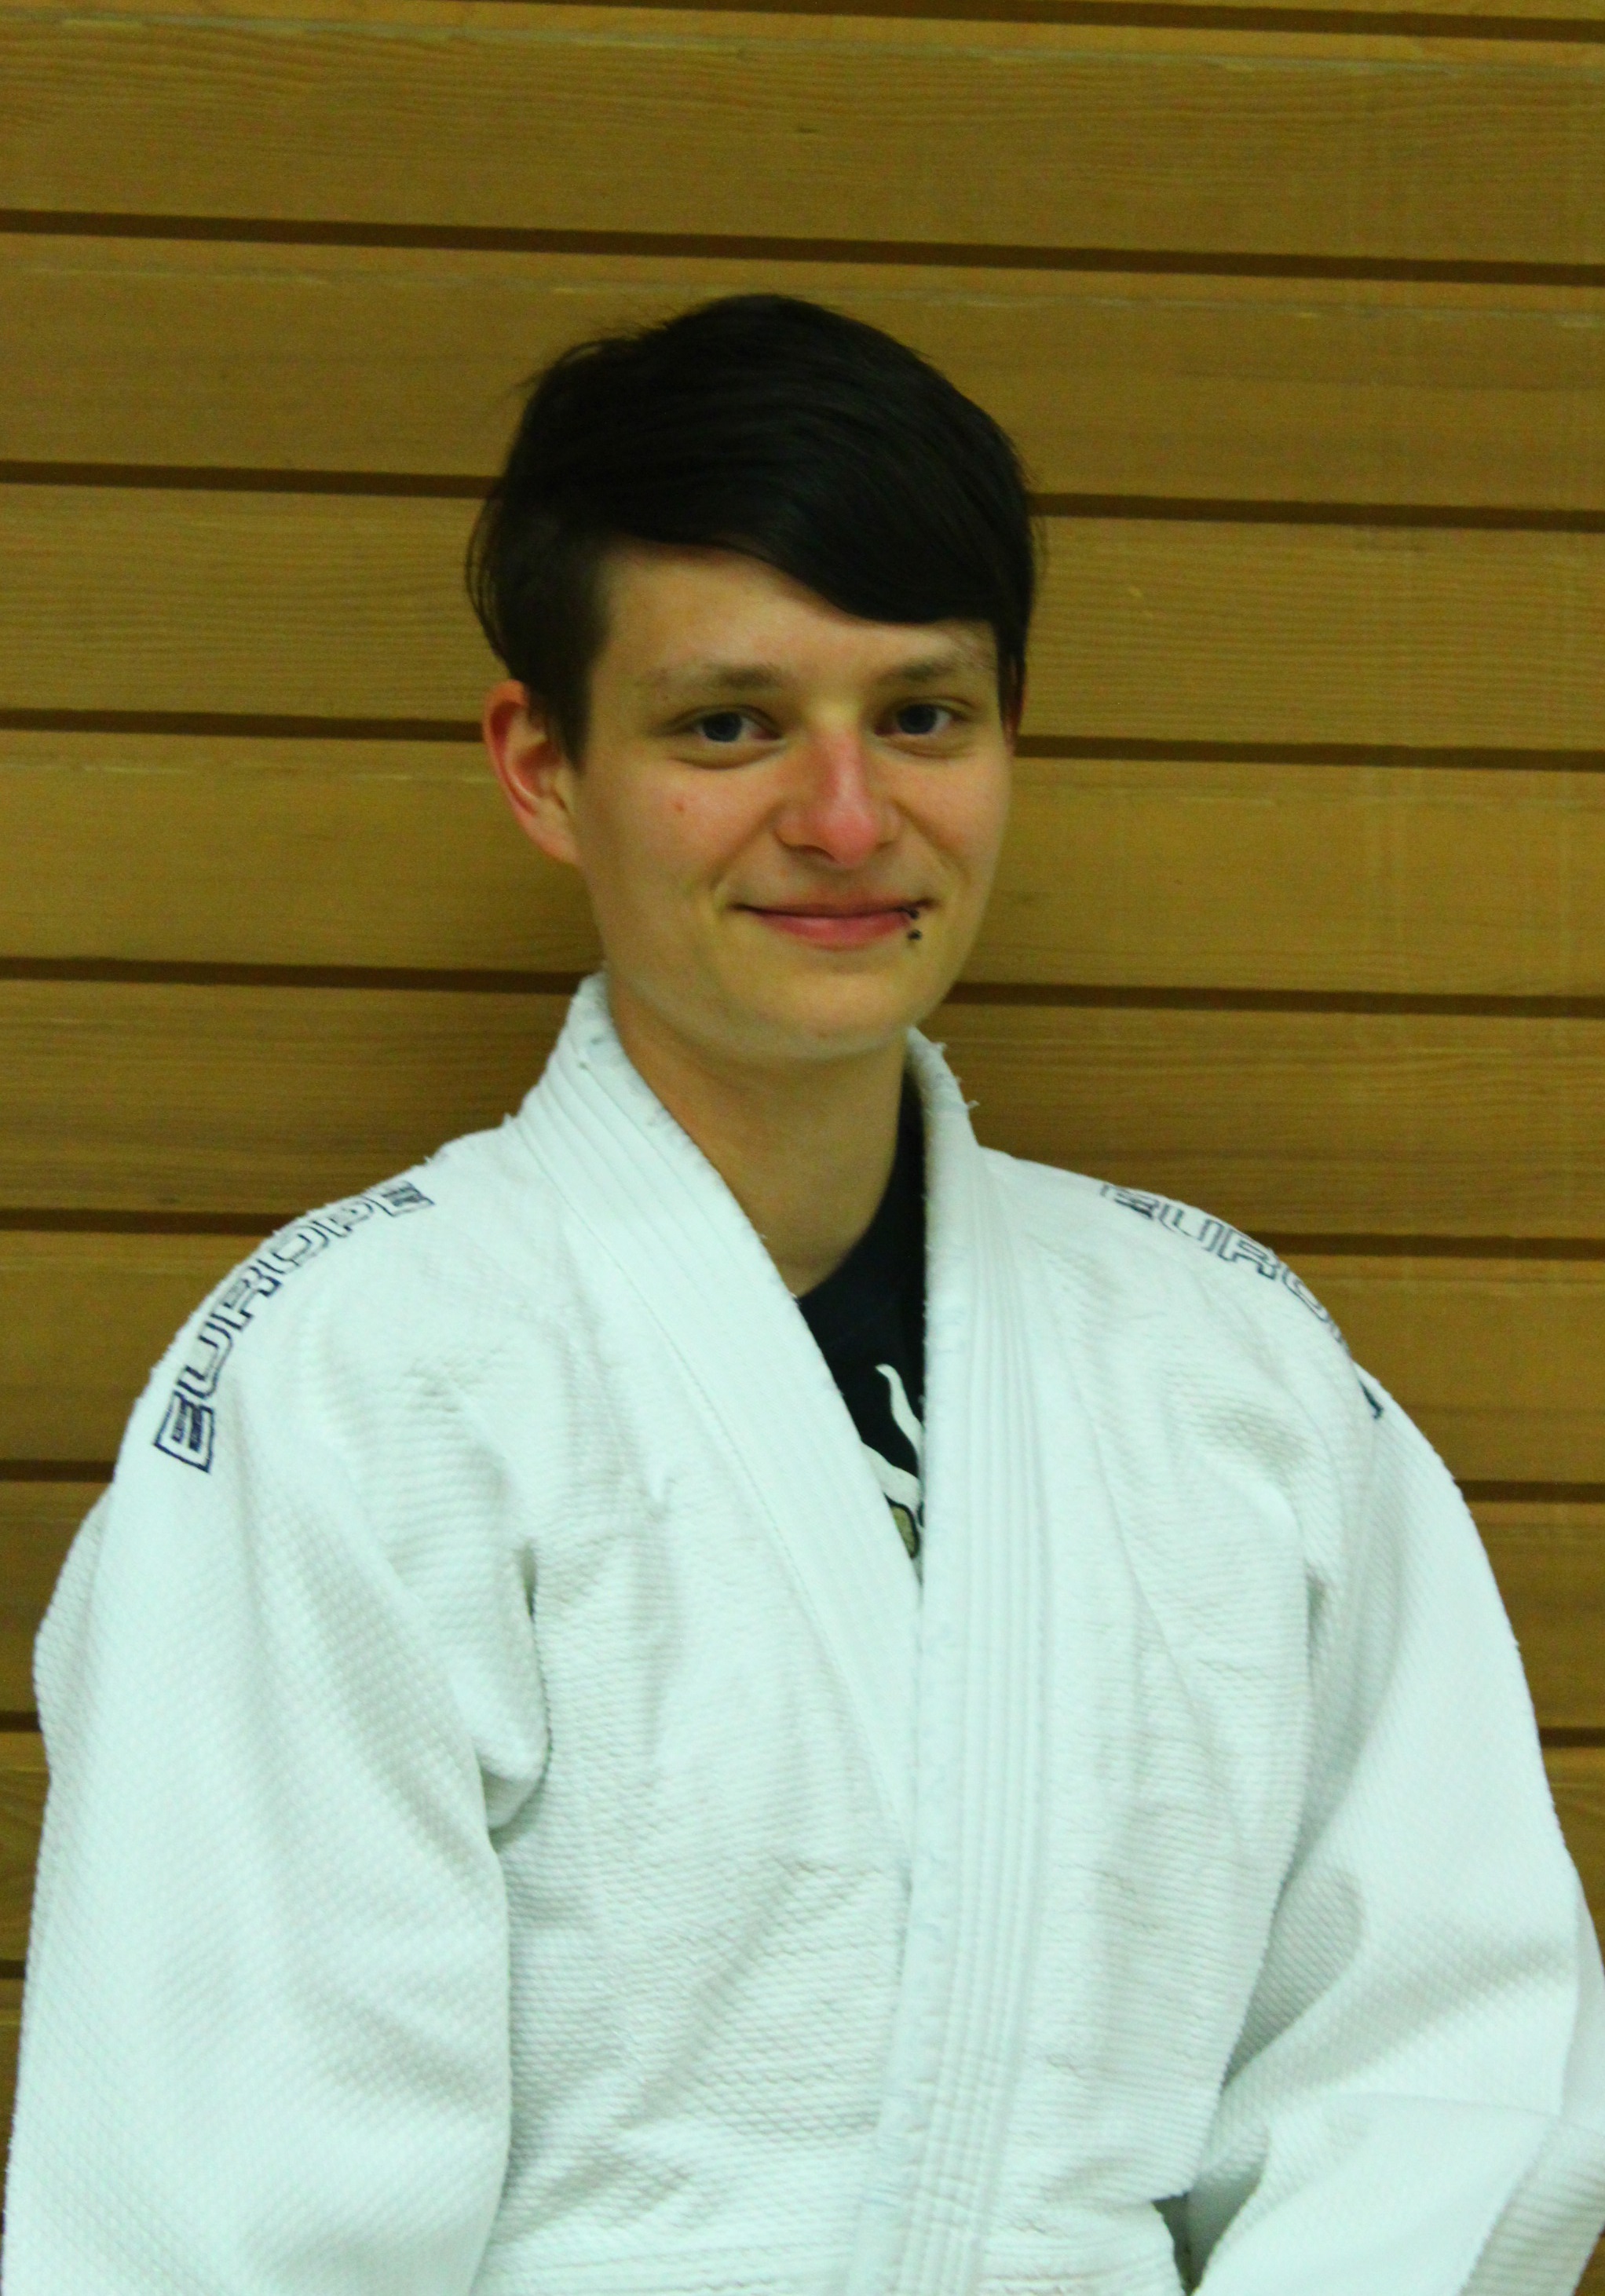 Porträ von Sabrina Kestler, im Judo Anzug vor einer Holzwand.